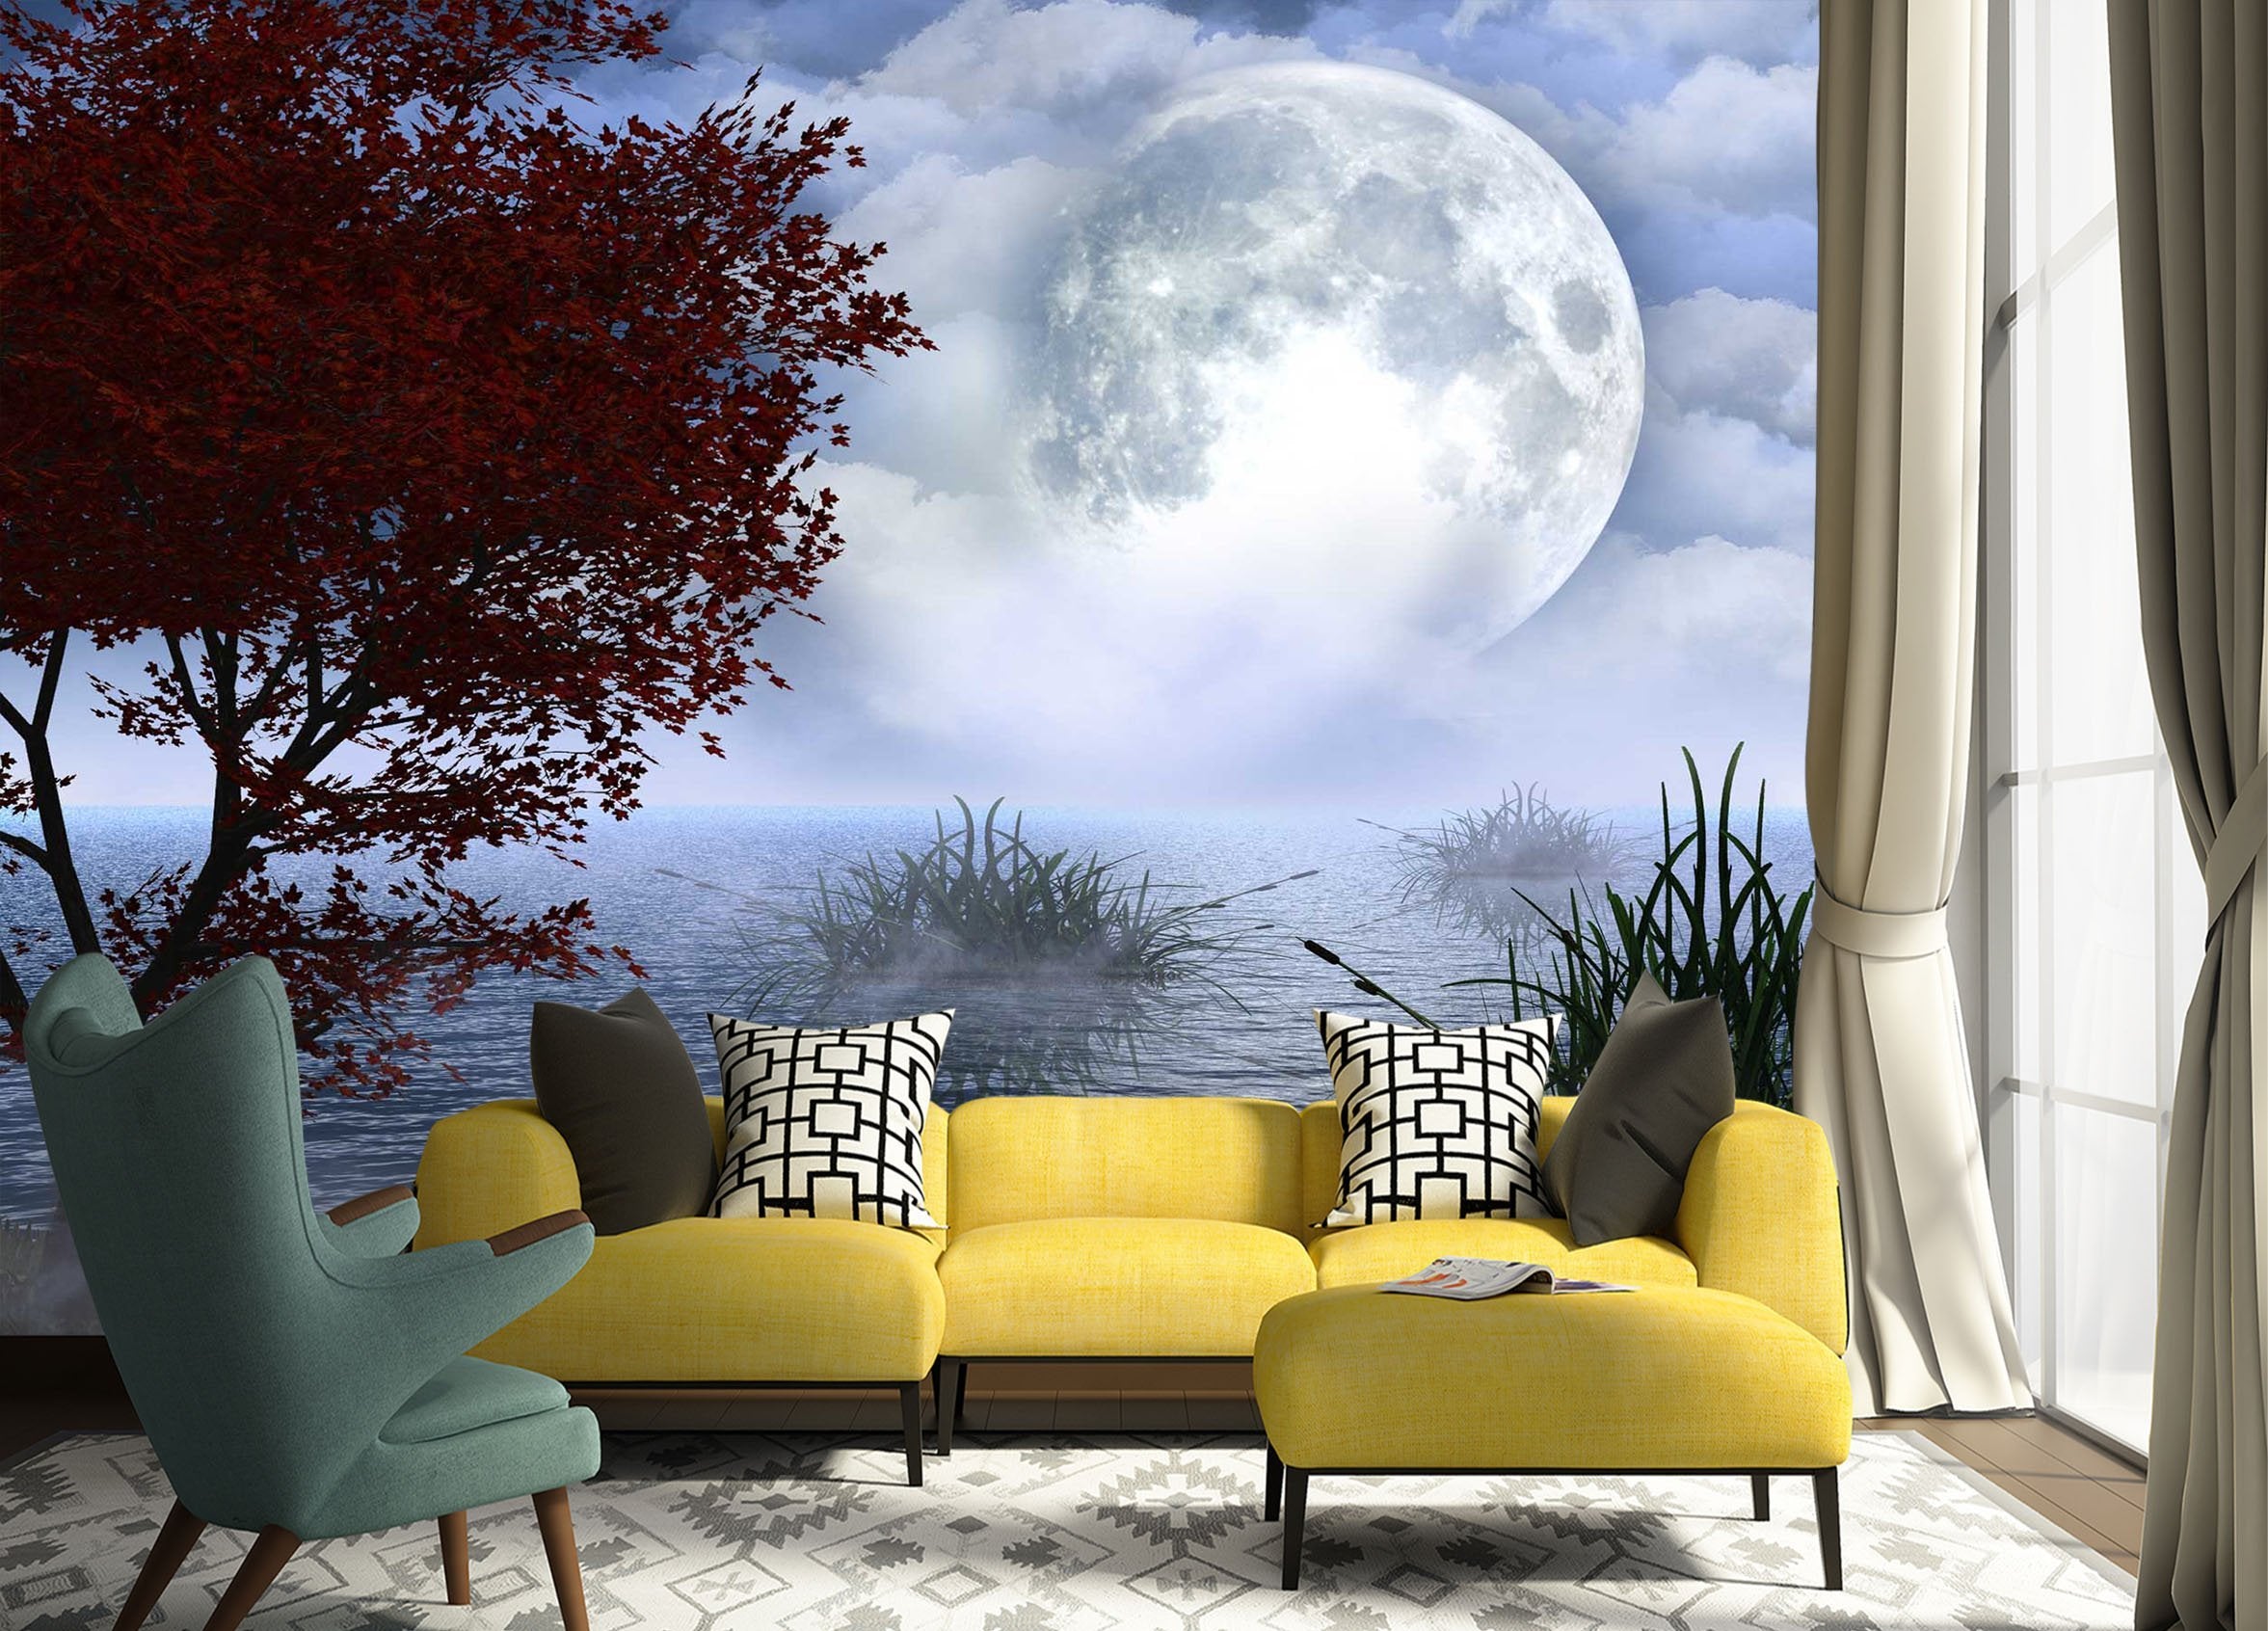 3D Moon Lake Tree 705 Wallpaper AJ Wallpaper 